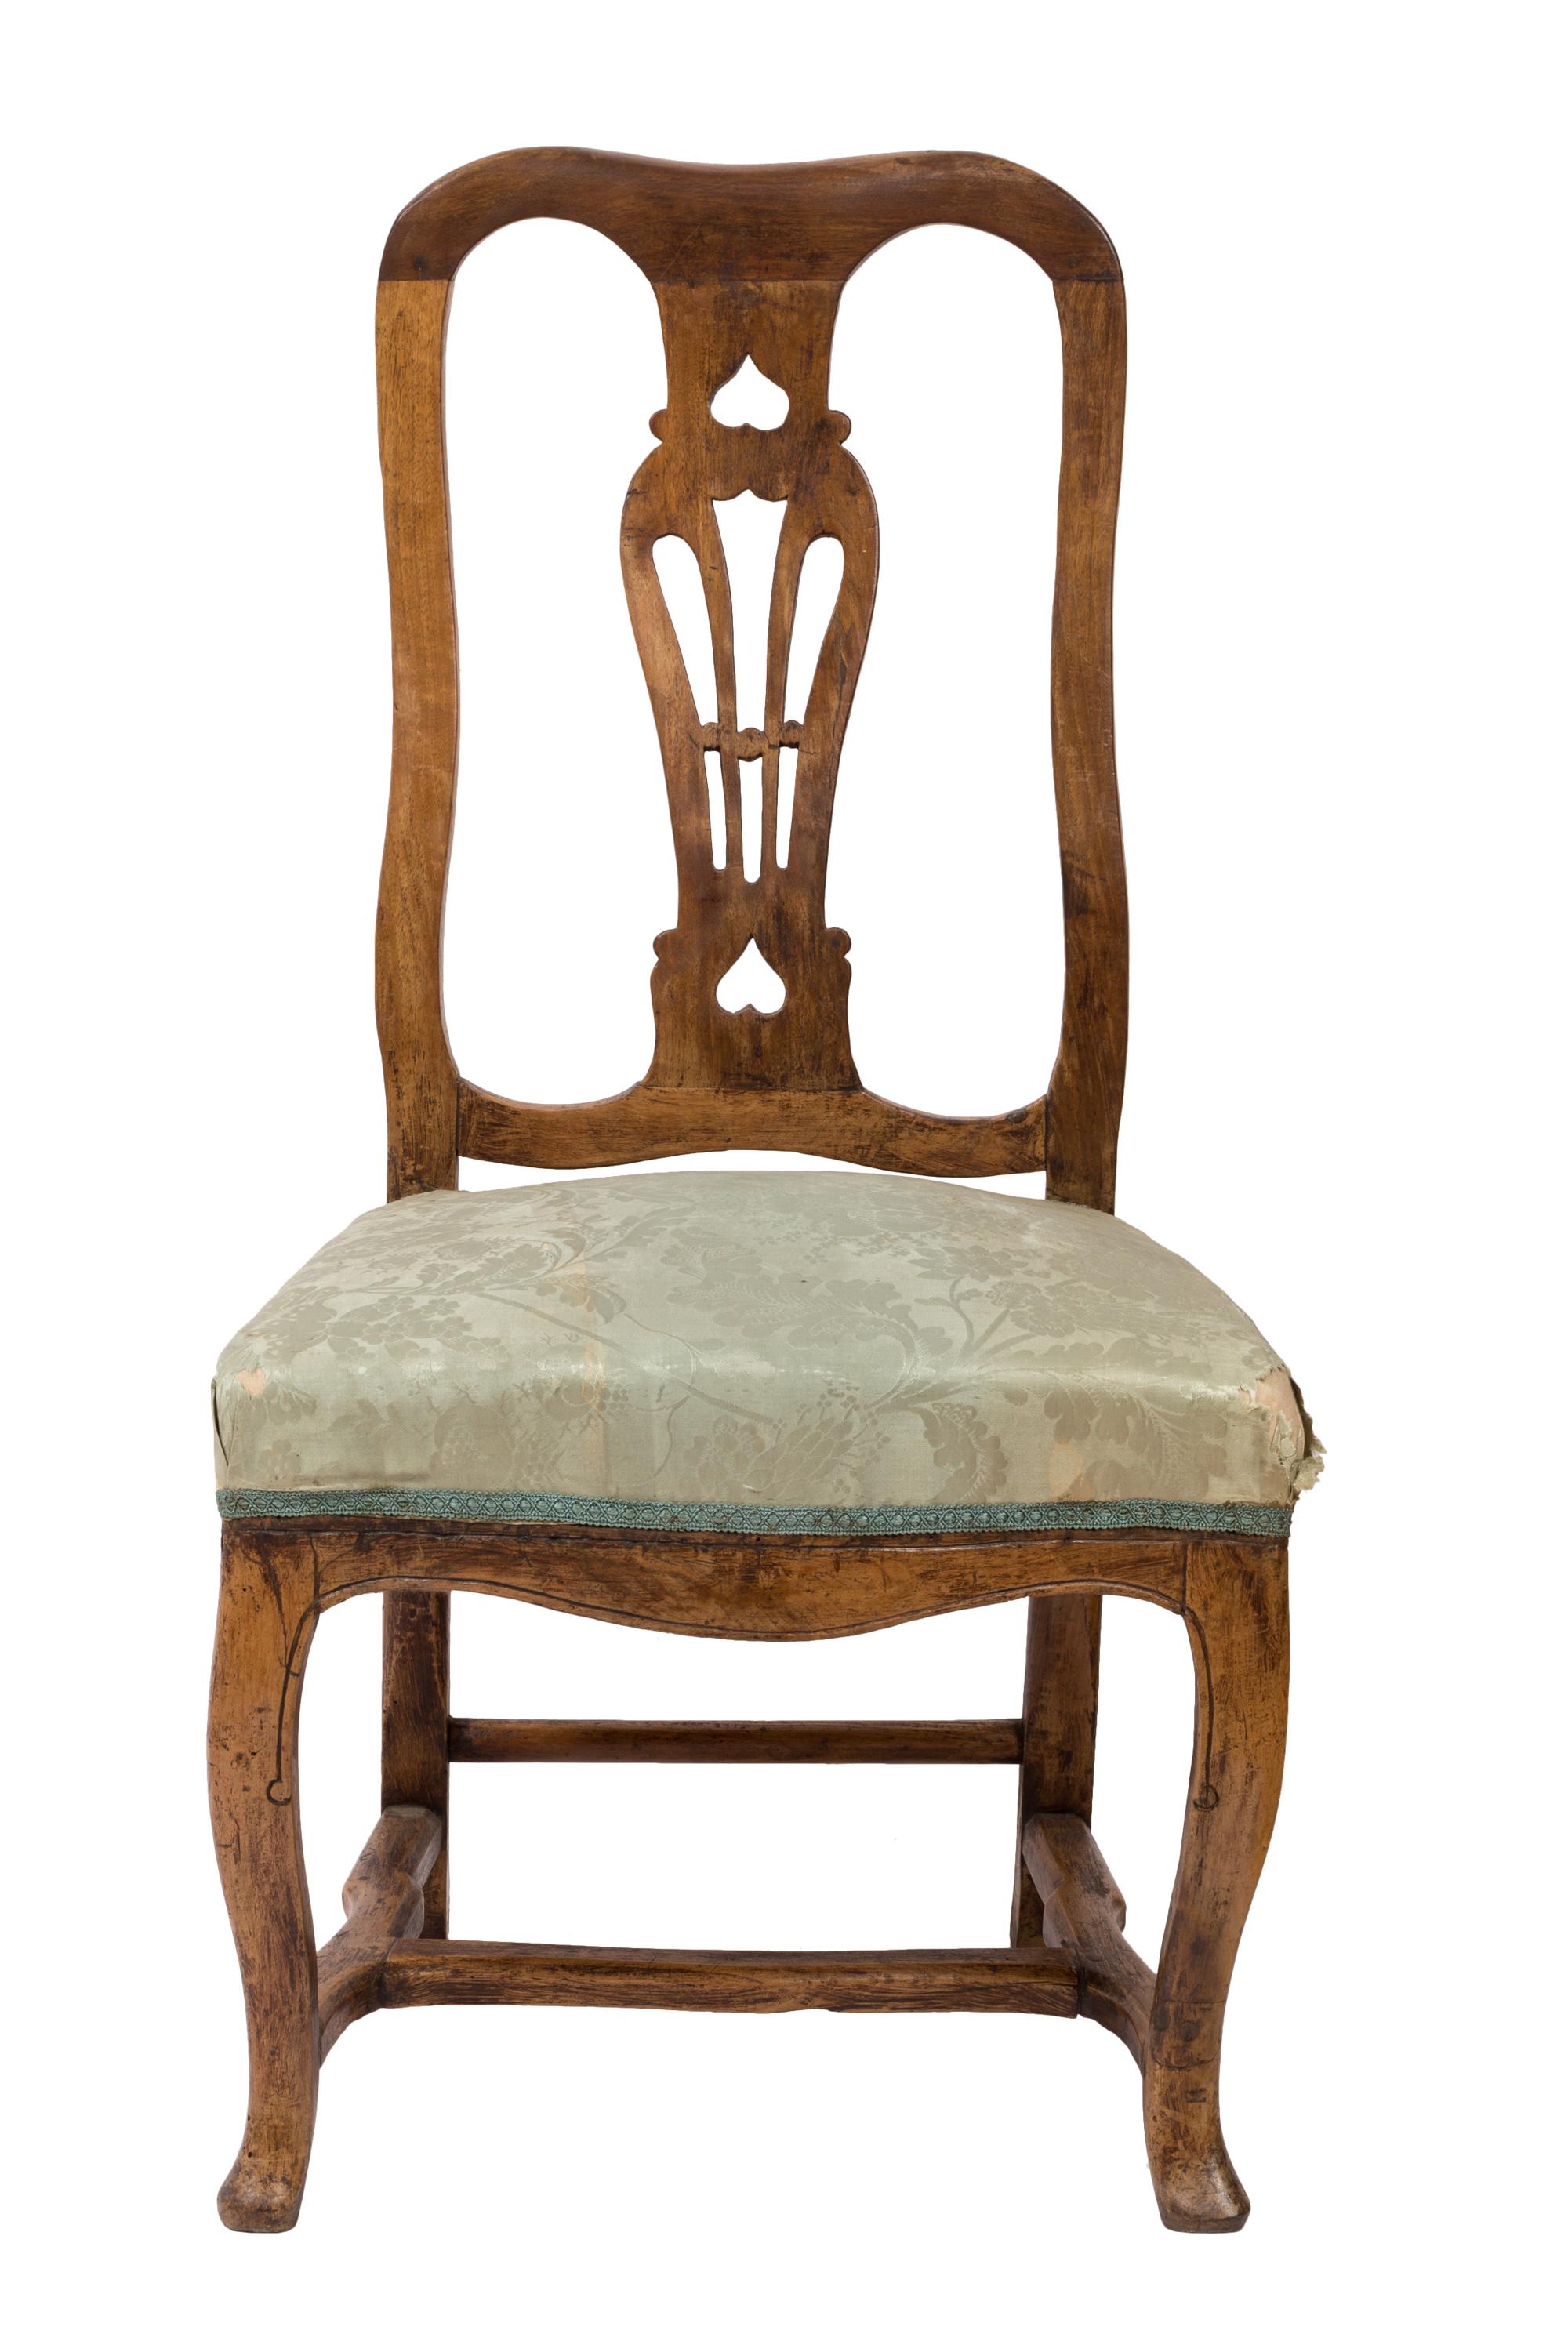 Ensemble assorti de quatre chaises d'appoint de style Queen Anne, avec dossier percé en forme d'urne. Les meubles en bois ont beaucoup de caractère - ils sont bien construits et solides, avec une qualité rustique faite à la main. Quelques légères